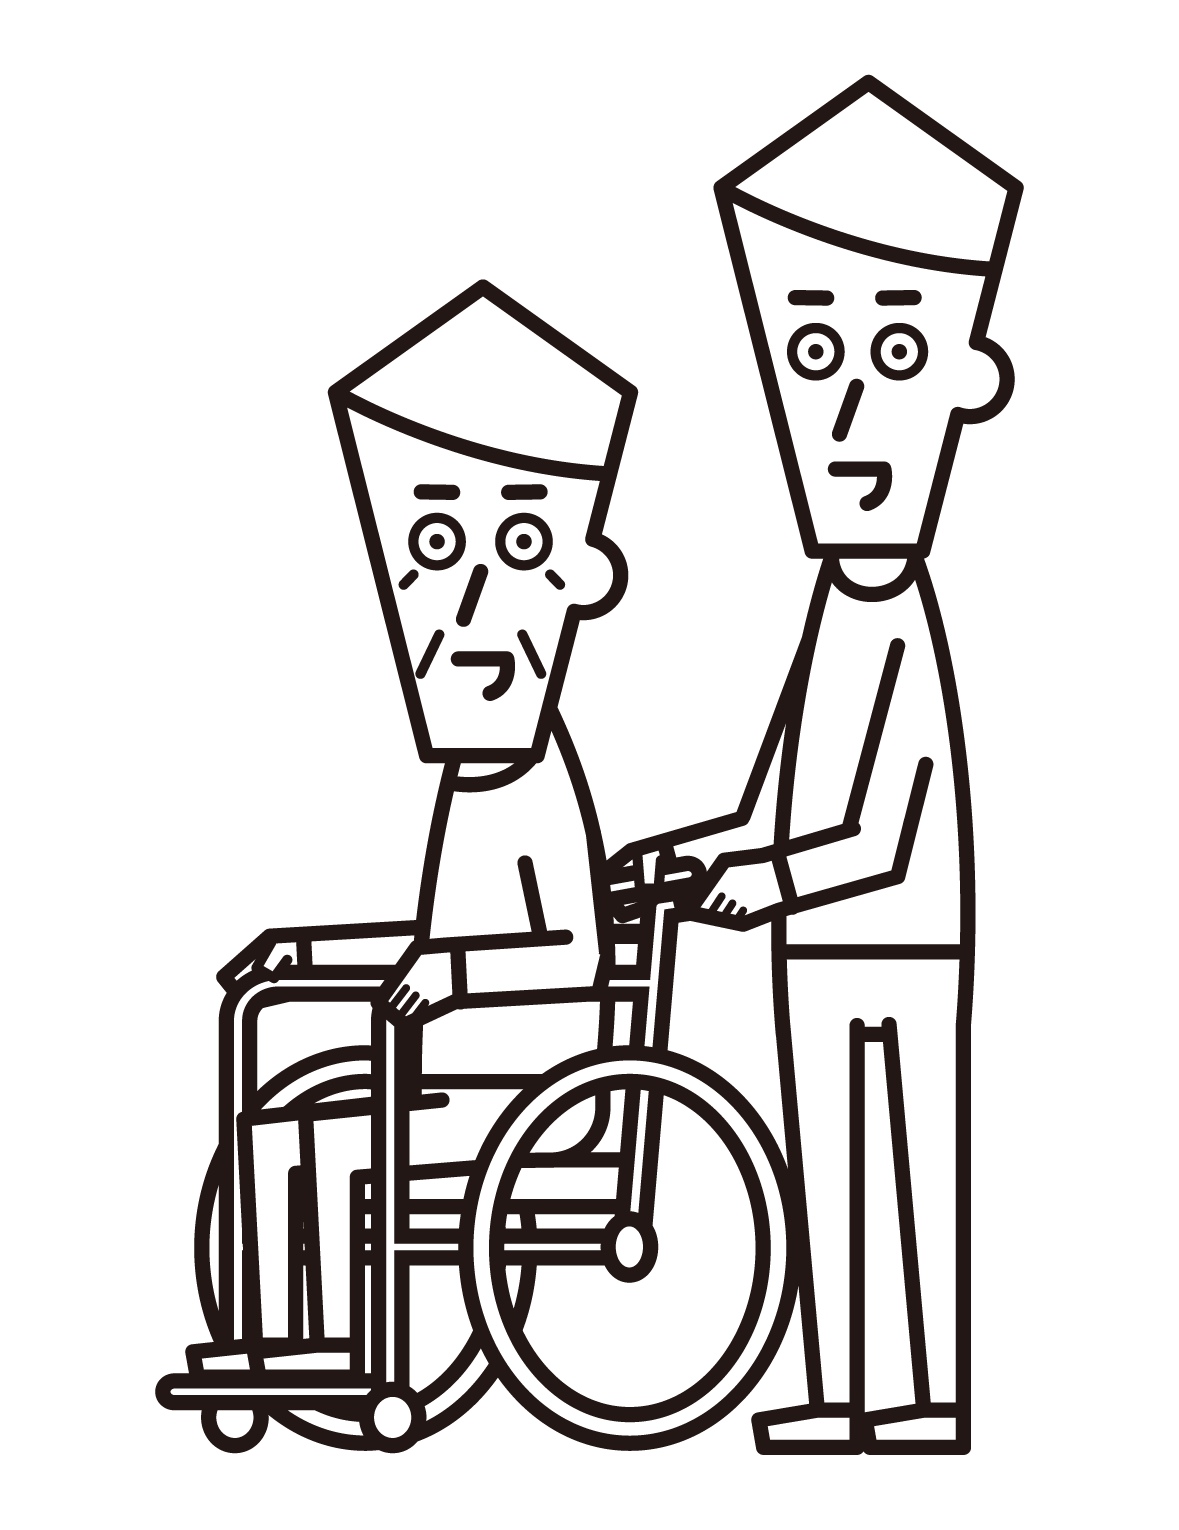 坐在輪椅上的人（祖父）和推人（男性）的插圖